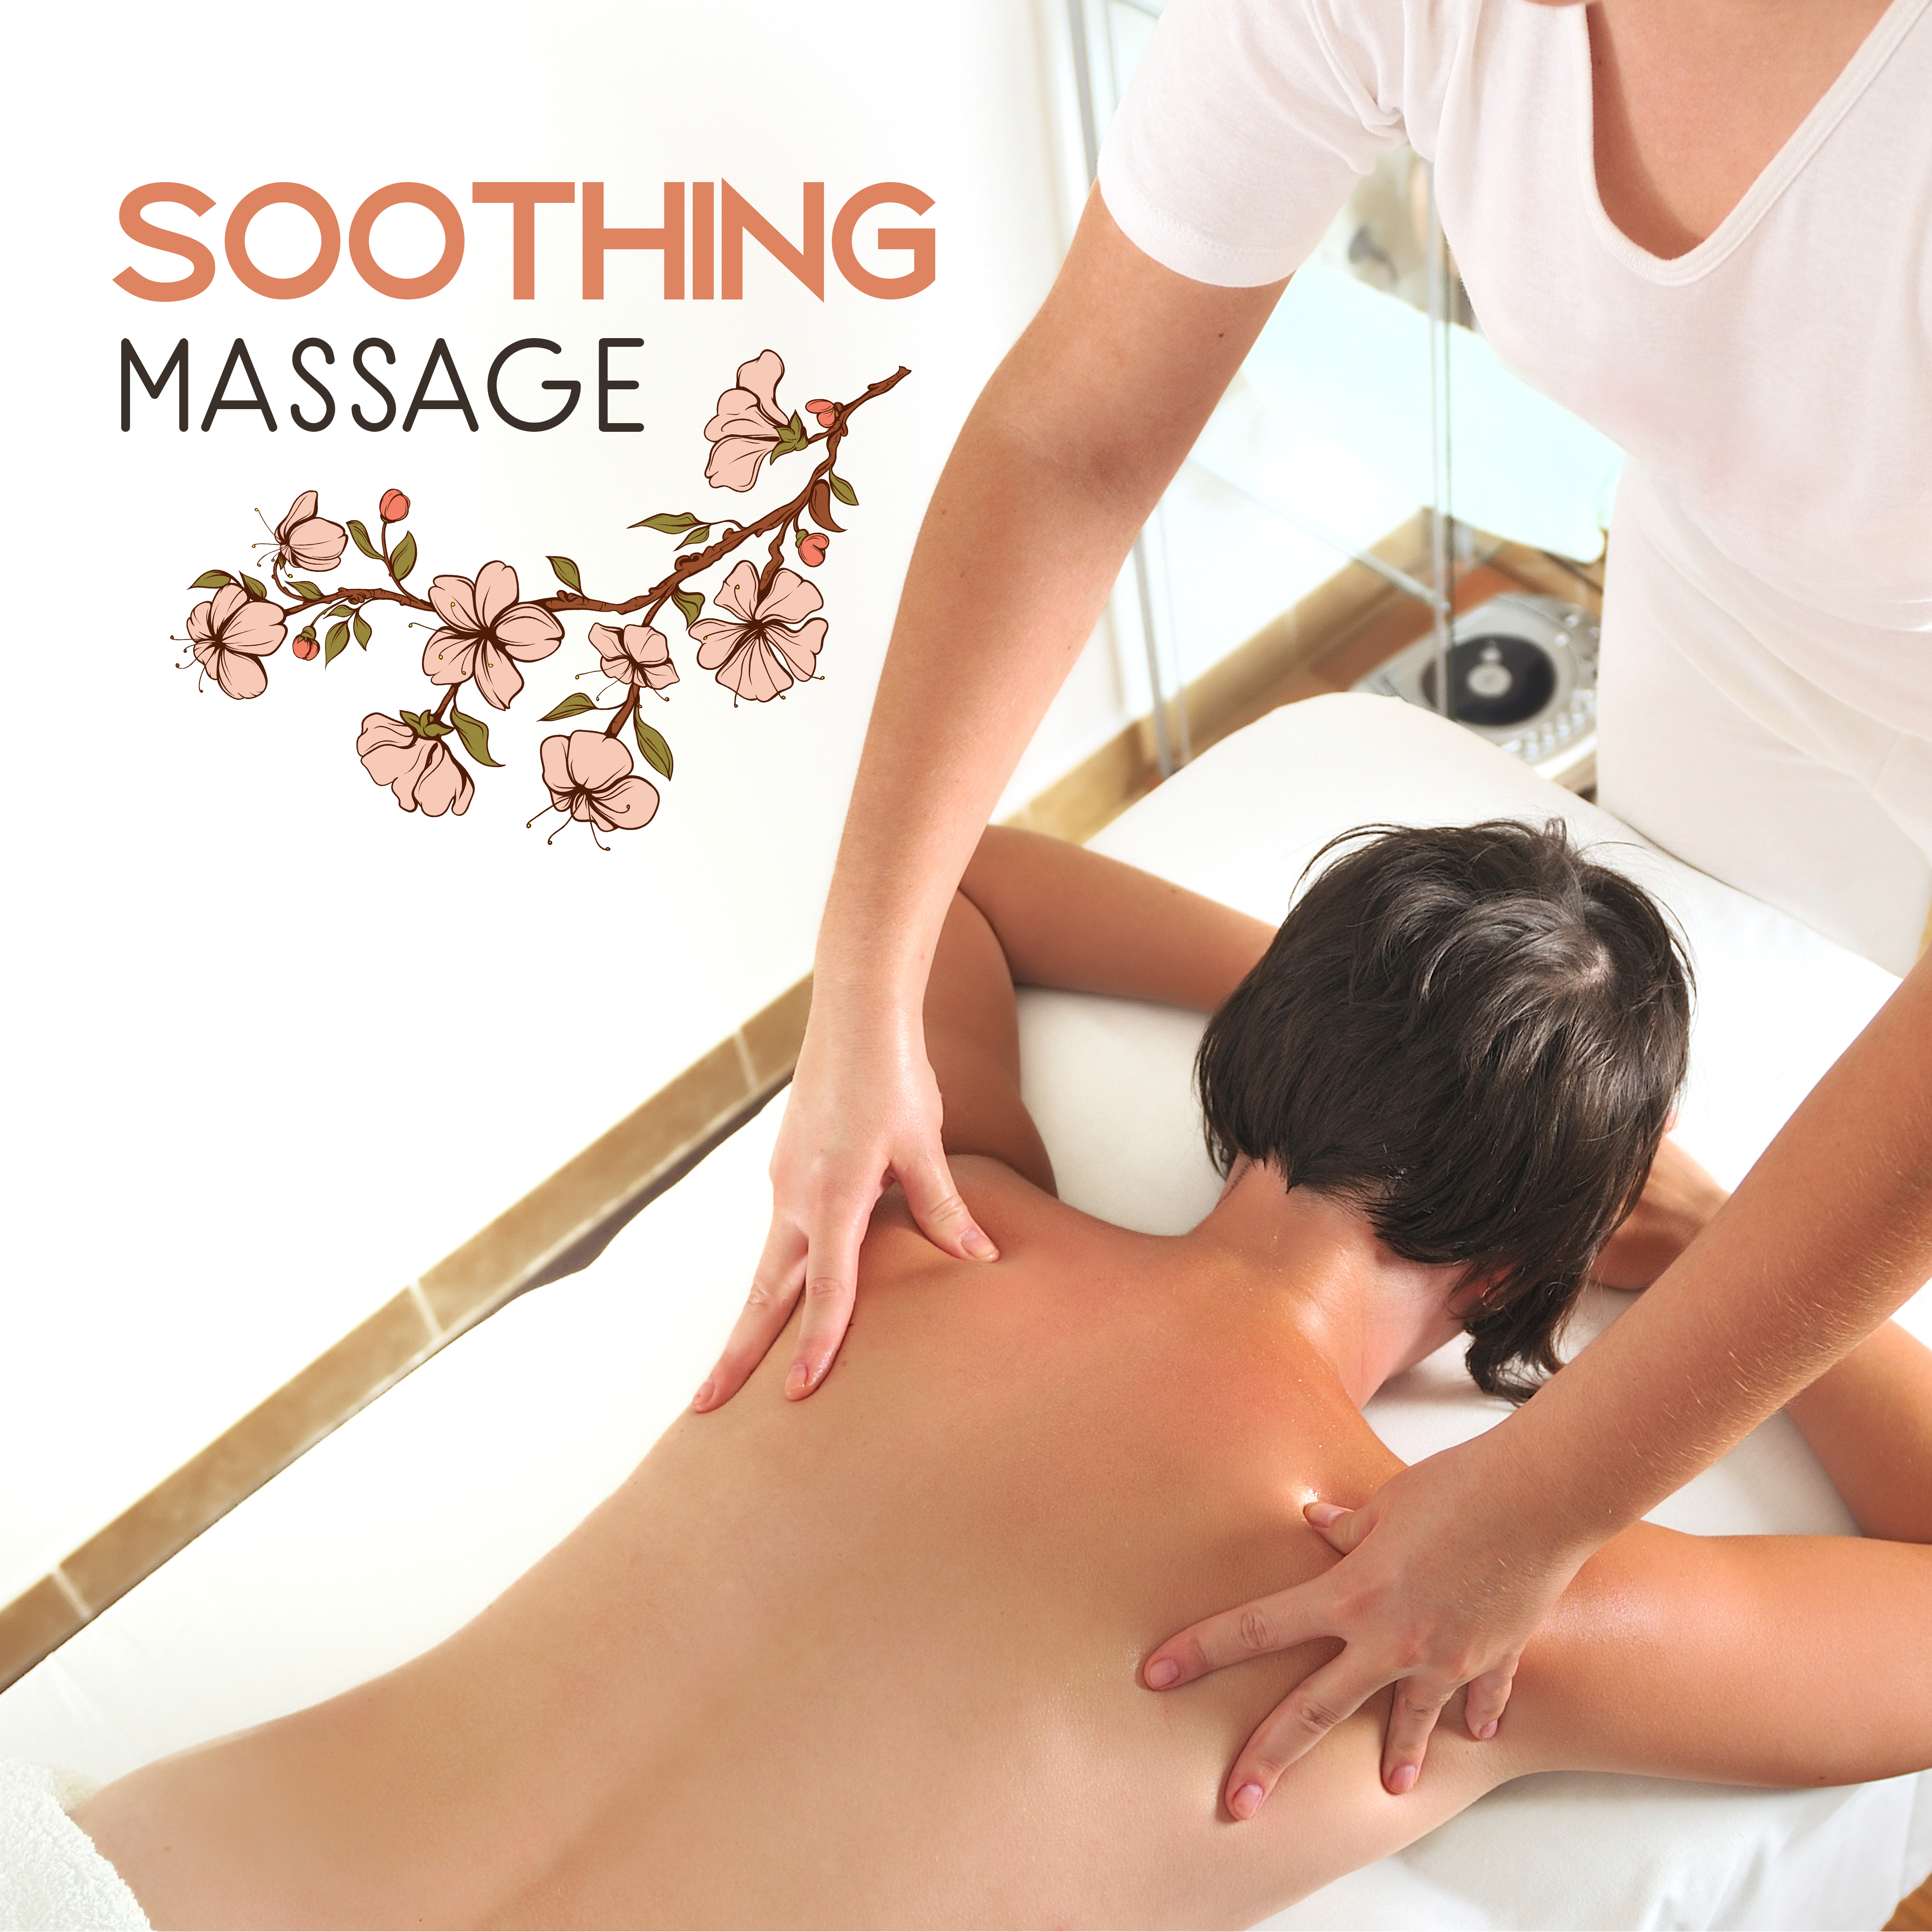 Soothing Massage – Spa Music, Healing Sounds, Relaxation Wellness, Massage Music, Pure Rest, Stress Free, Zen Garden, Deep Relief